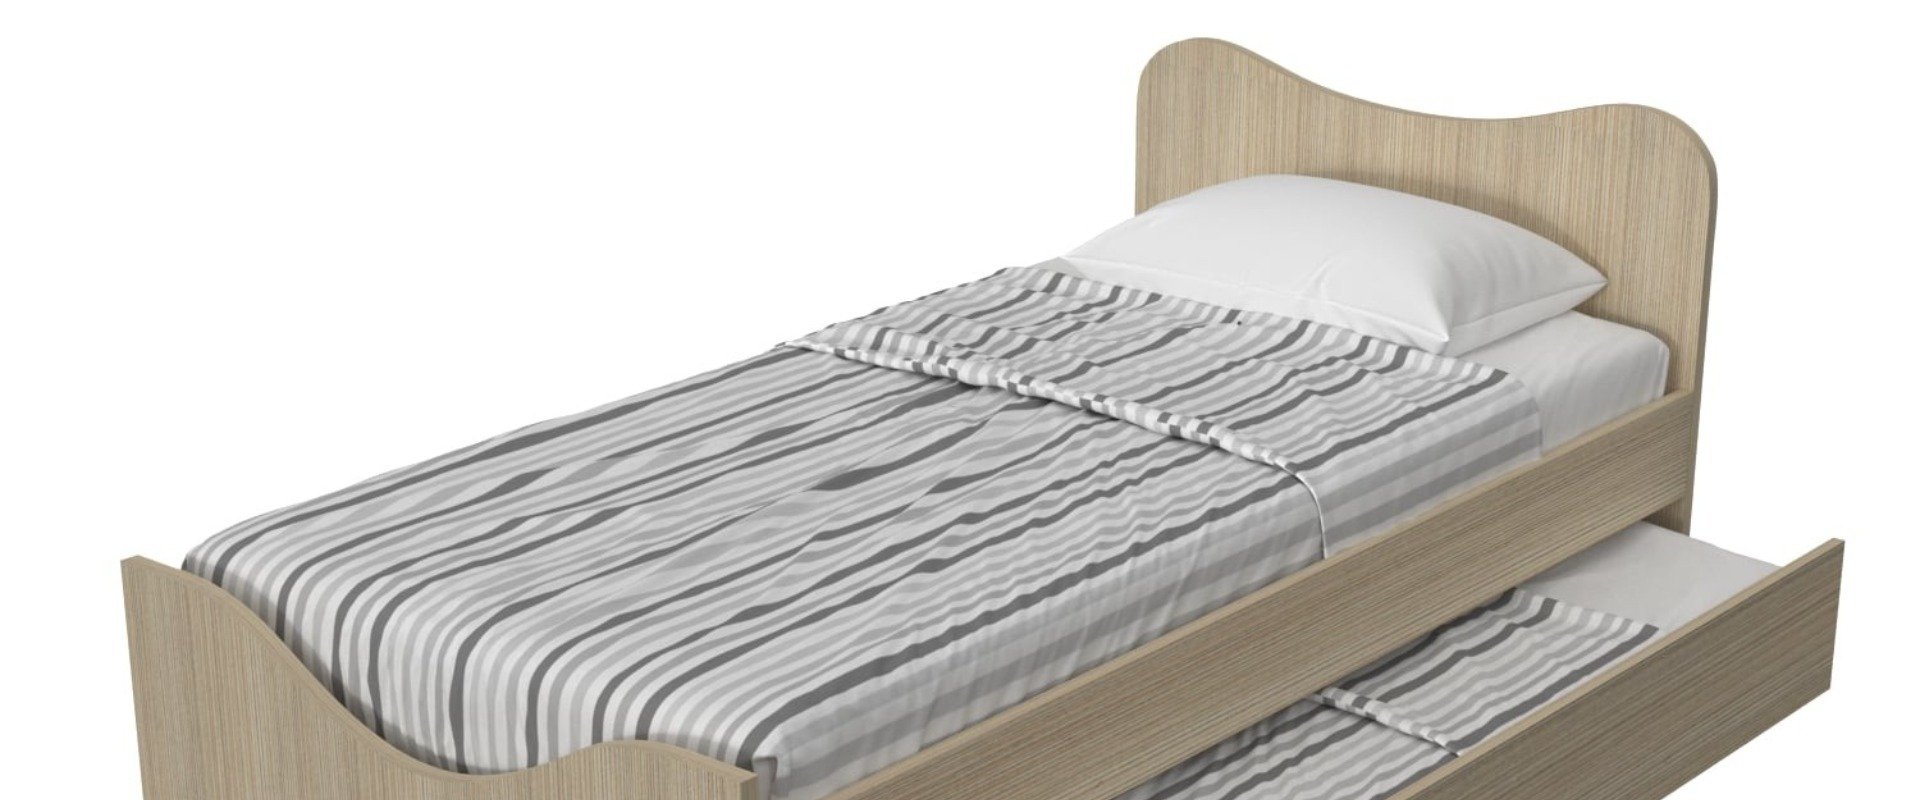 Κρεβάτι "Mood" χαμηλό ποδαρικό και μηχανισμό συρόμενου κρεβατιού